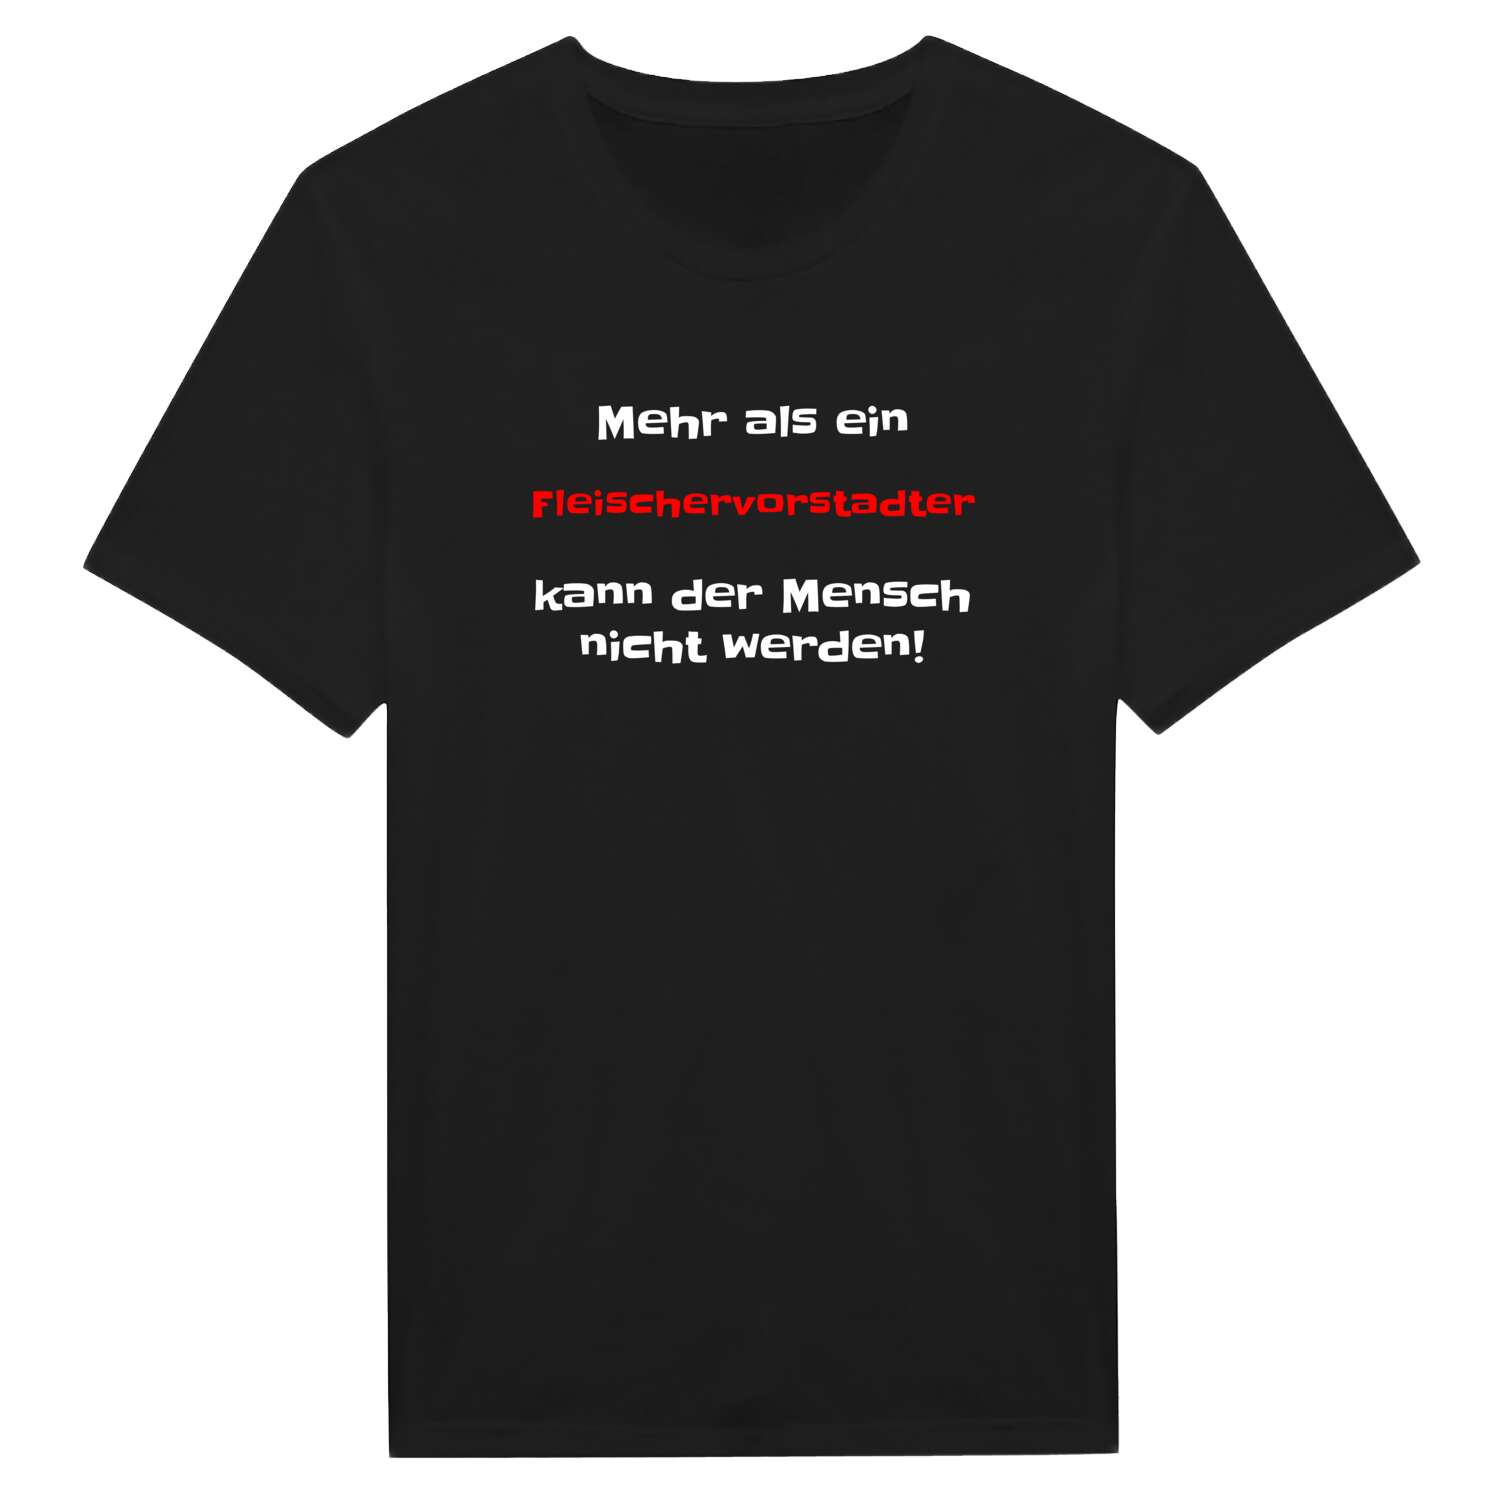 Fleischervorstadt T-Shirt »Mehr als ein«